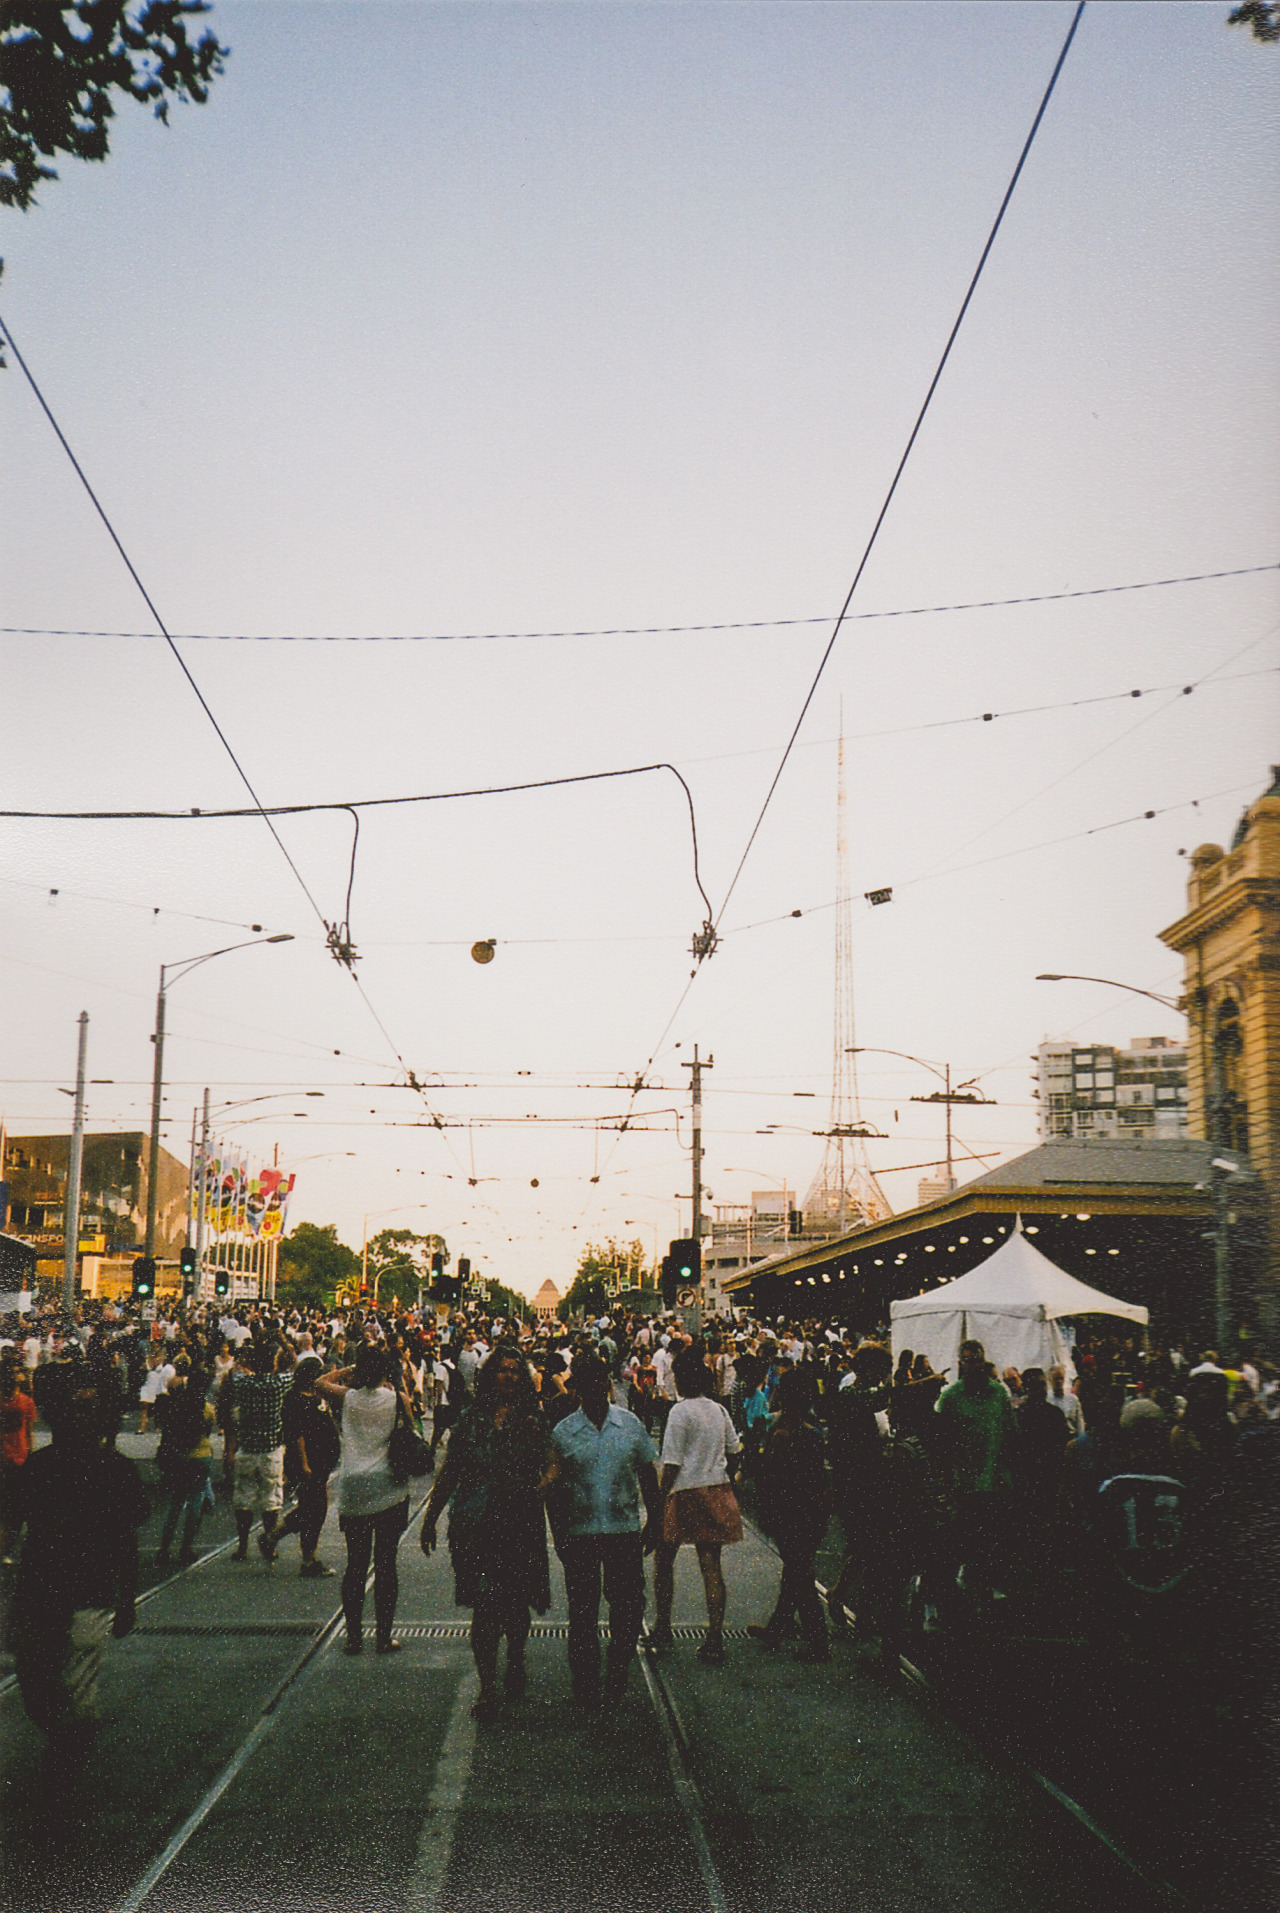 jaidensophoto: Melbourne some time ago. 